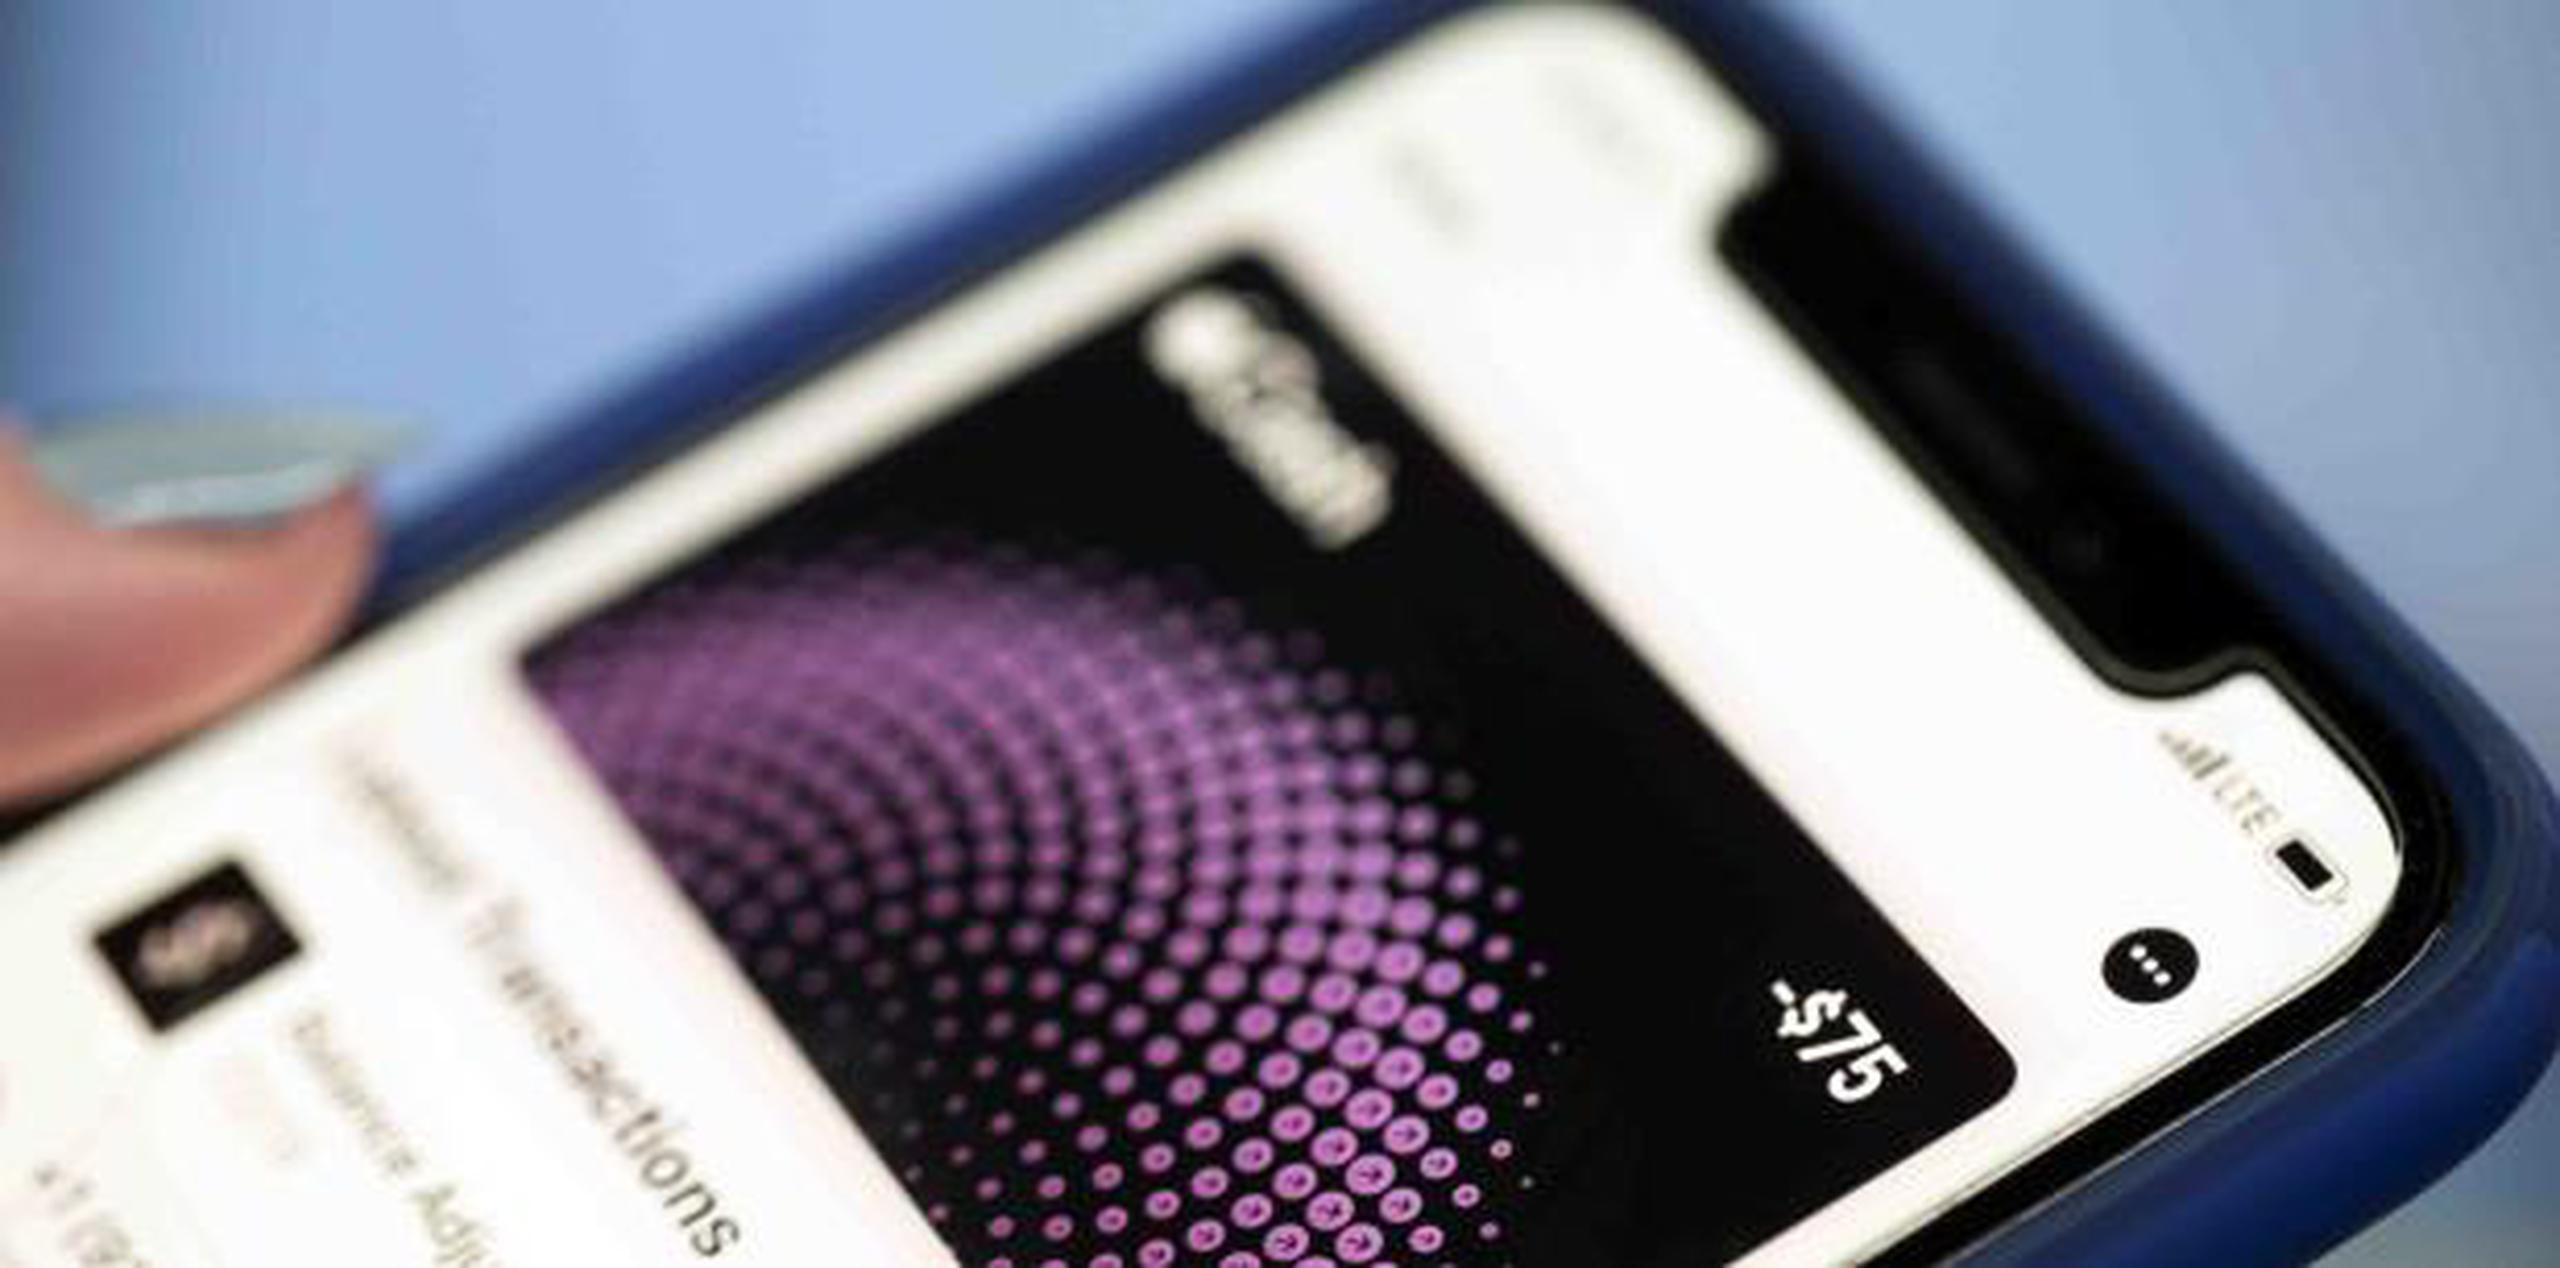 Los servicios de pagos digitales más recientes, como Apple Cash, todavía averiguan cómo lidiar con el fraude, dicen los expertos. (AP / Jenny Kane)